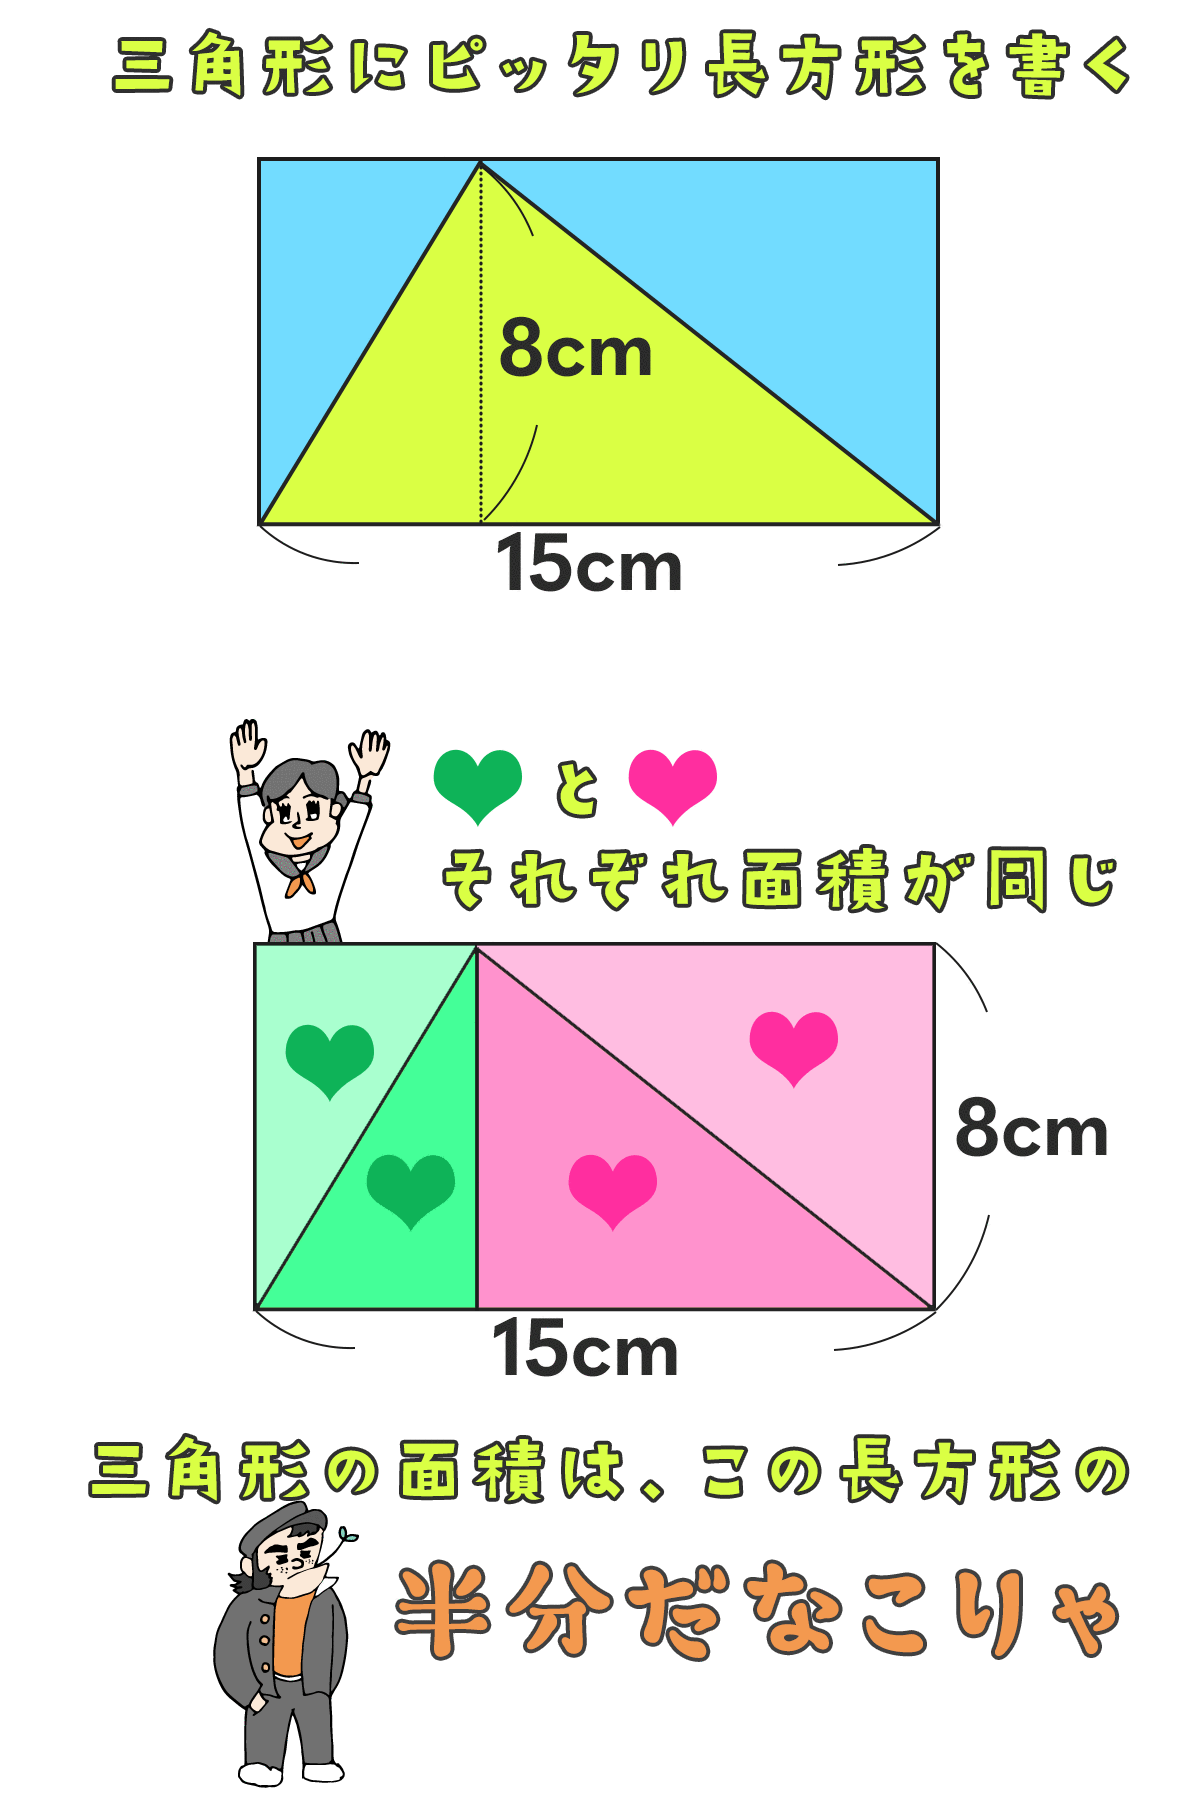 三角形の面積は長方形の半分